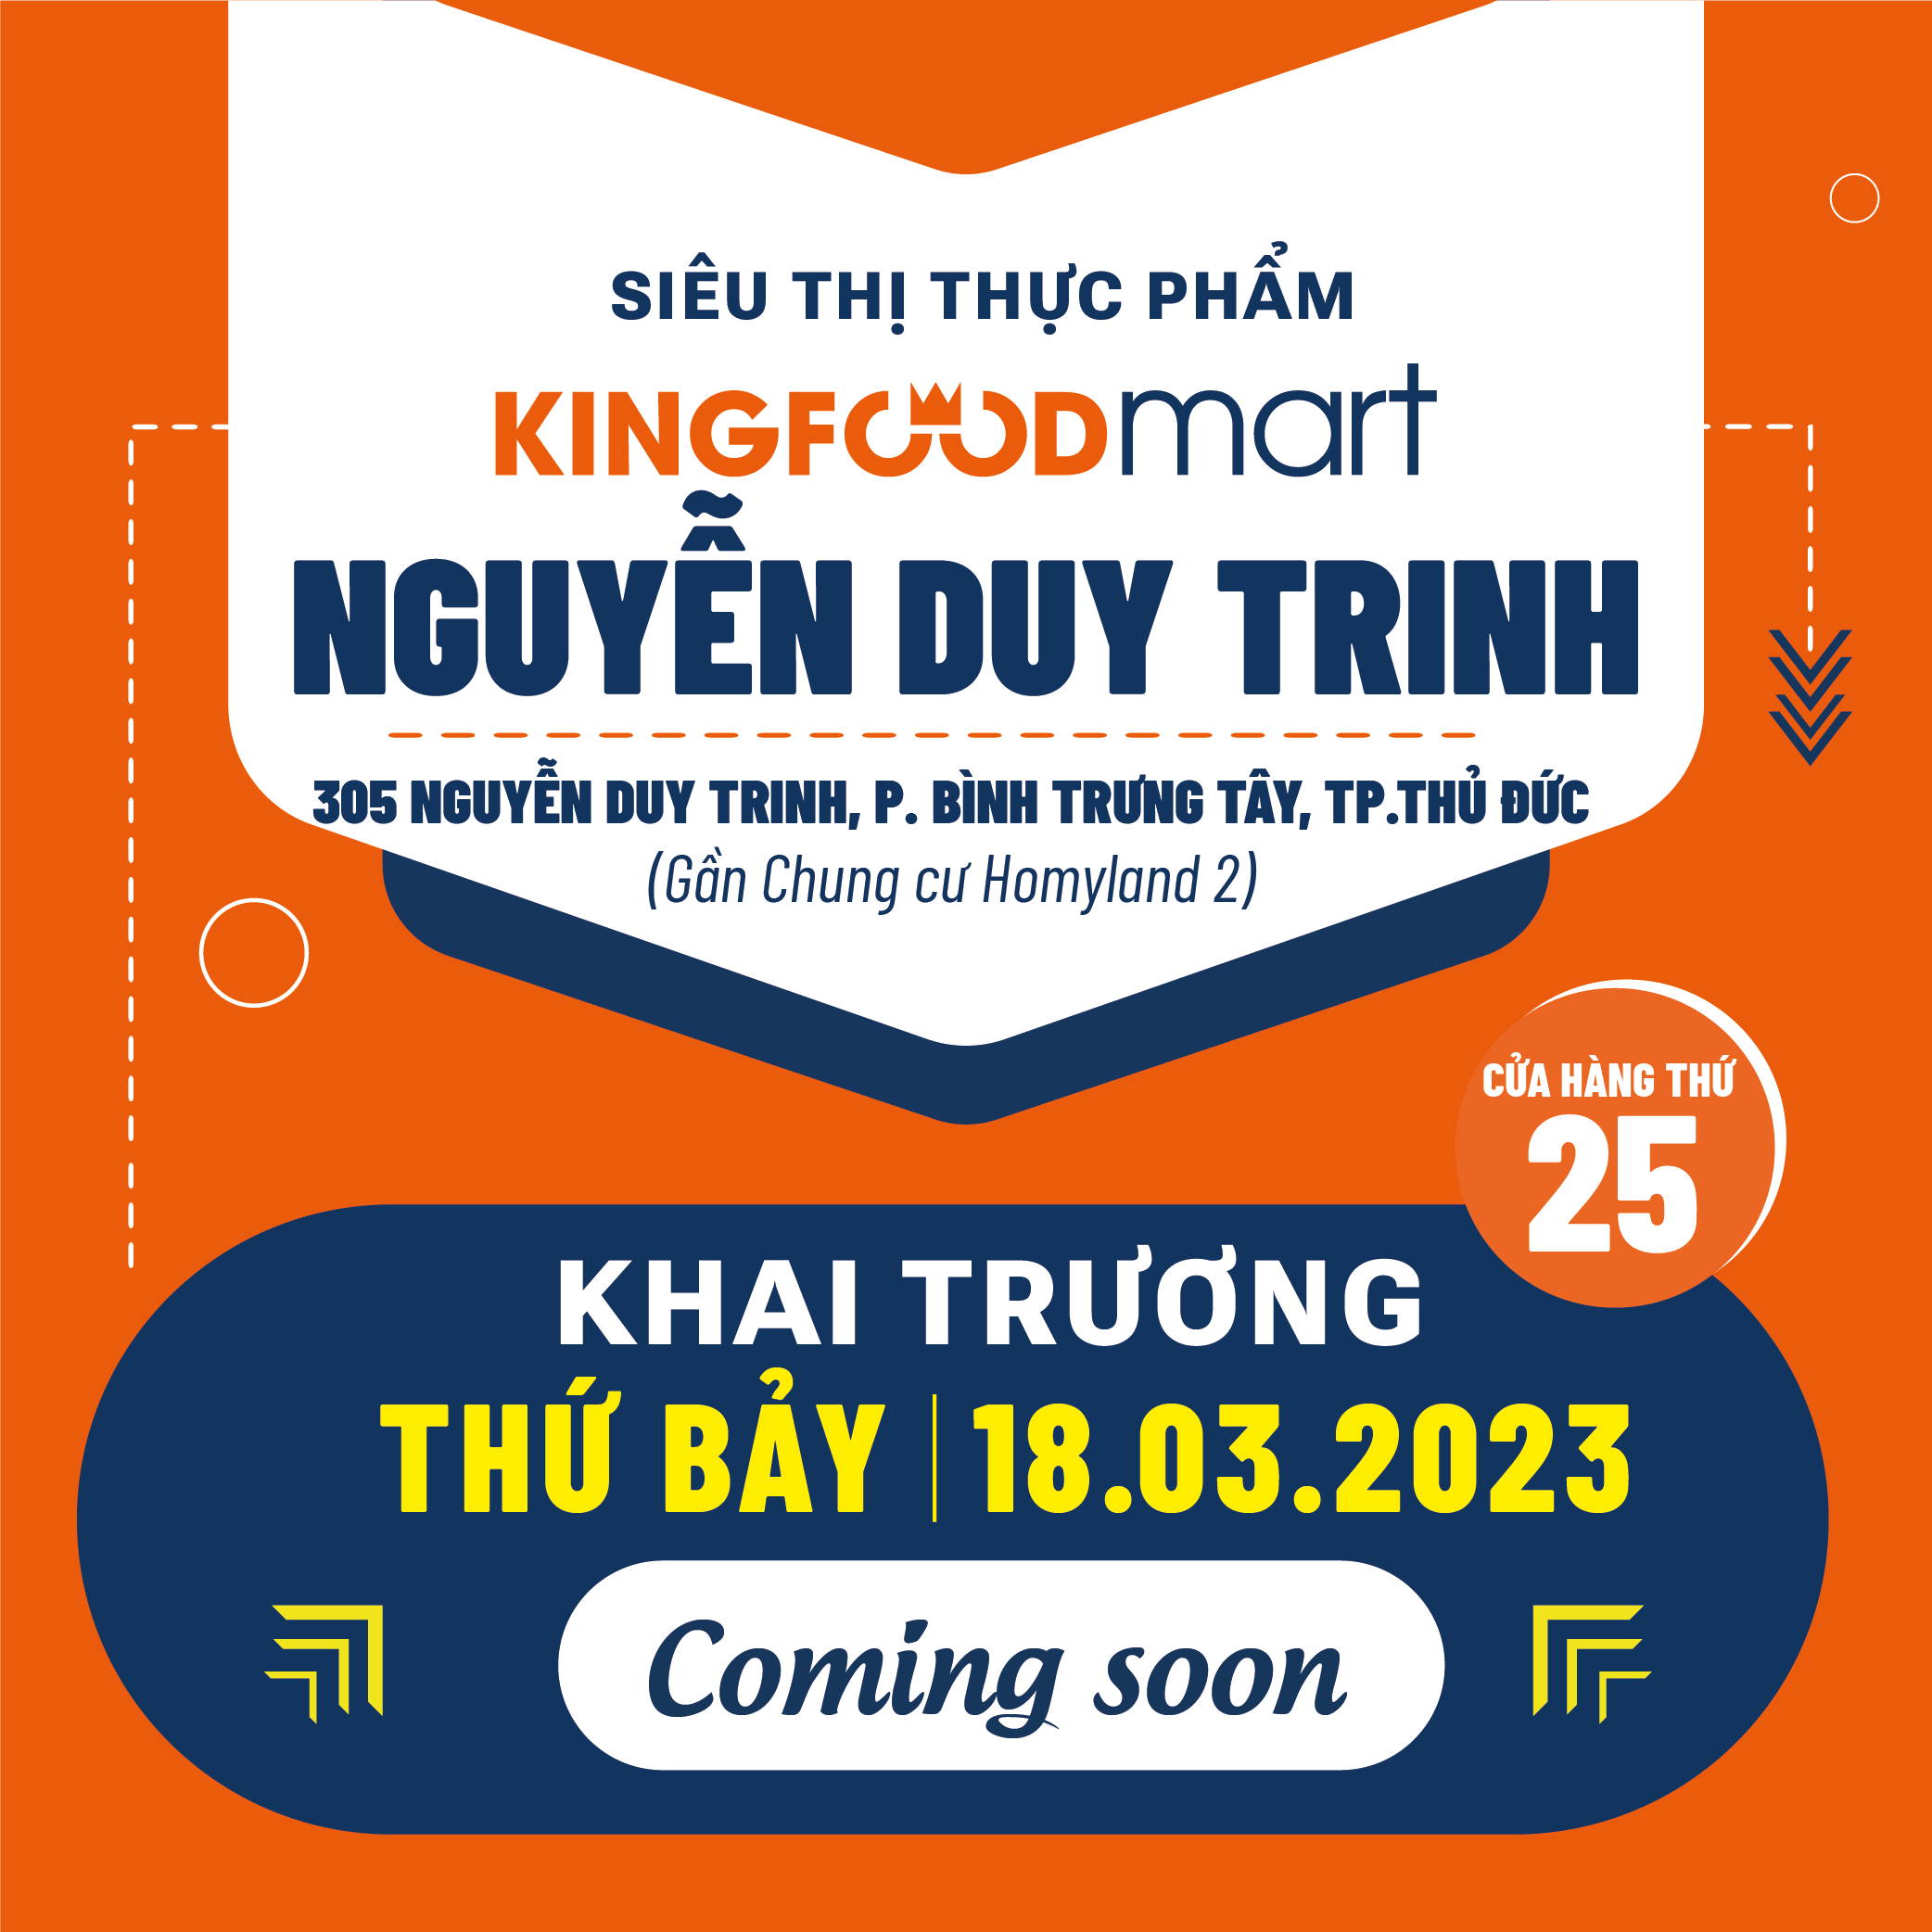 Tưng Bừng Khai Trương Kingfoodmart Nguyễn Duy Trinh